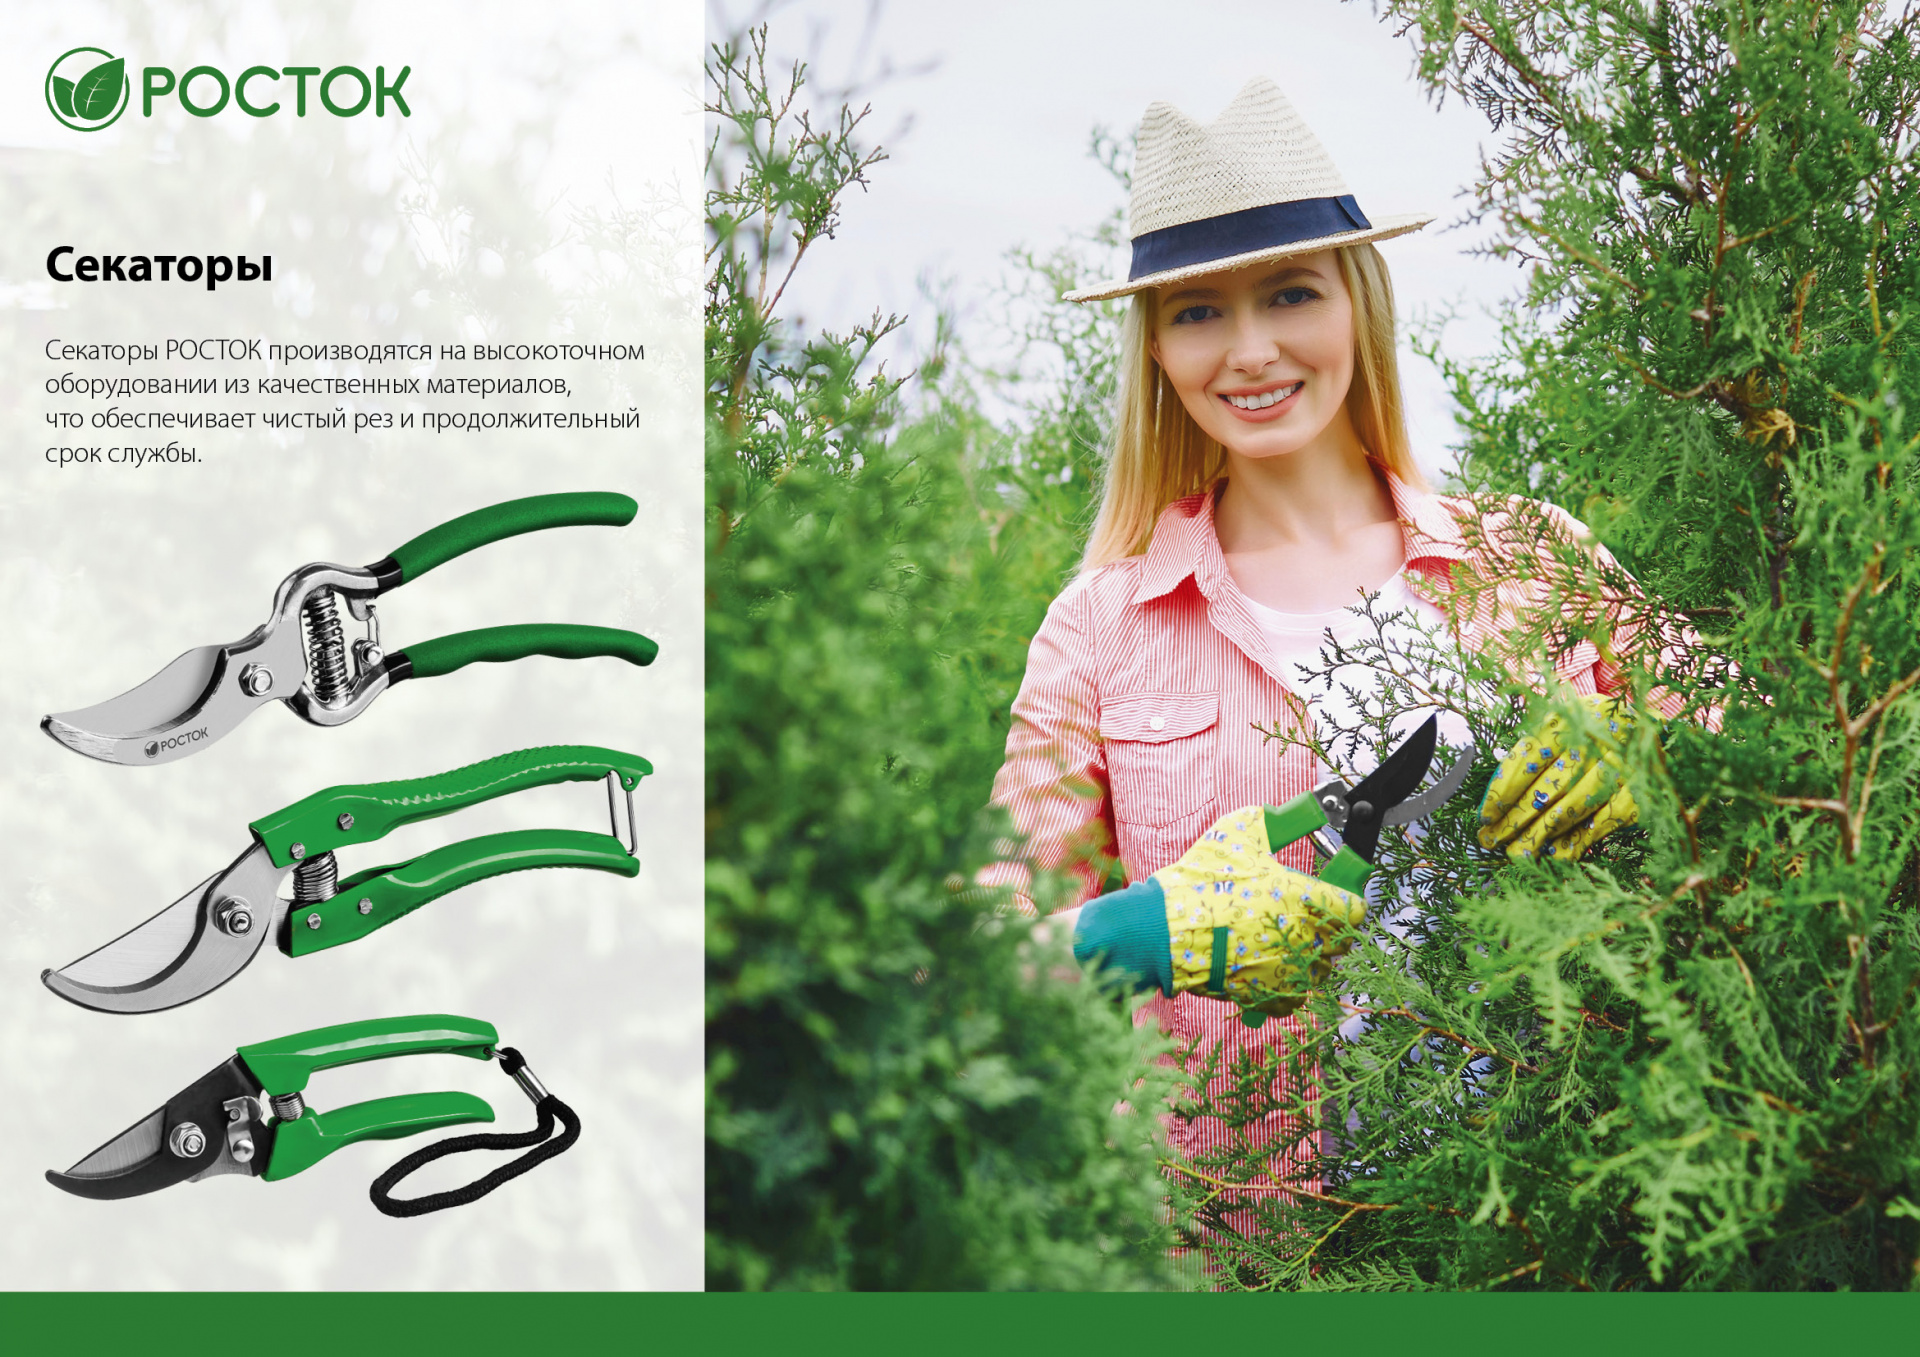 Ножницы садовые с эргономичными пластиковыми рукоятками, 205 мм, РОСТОК PC-80